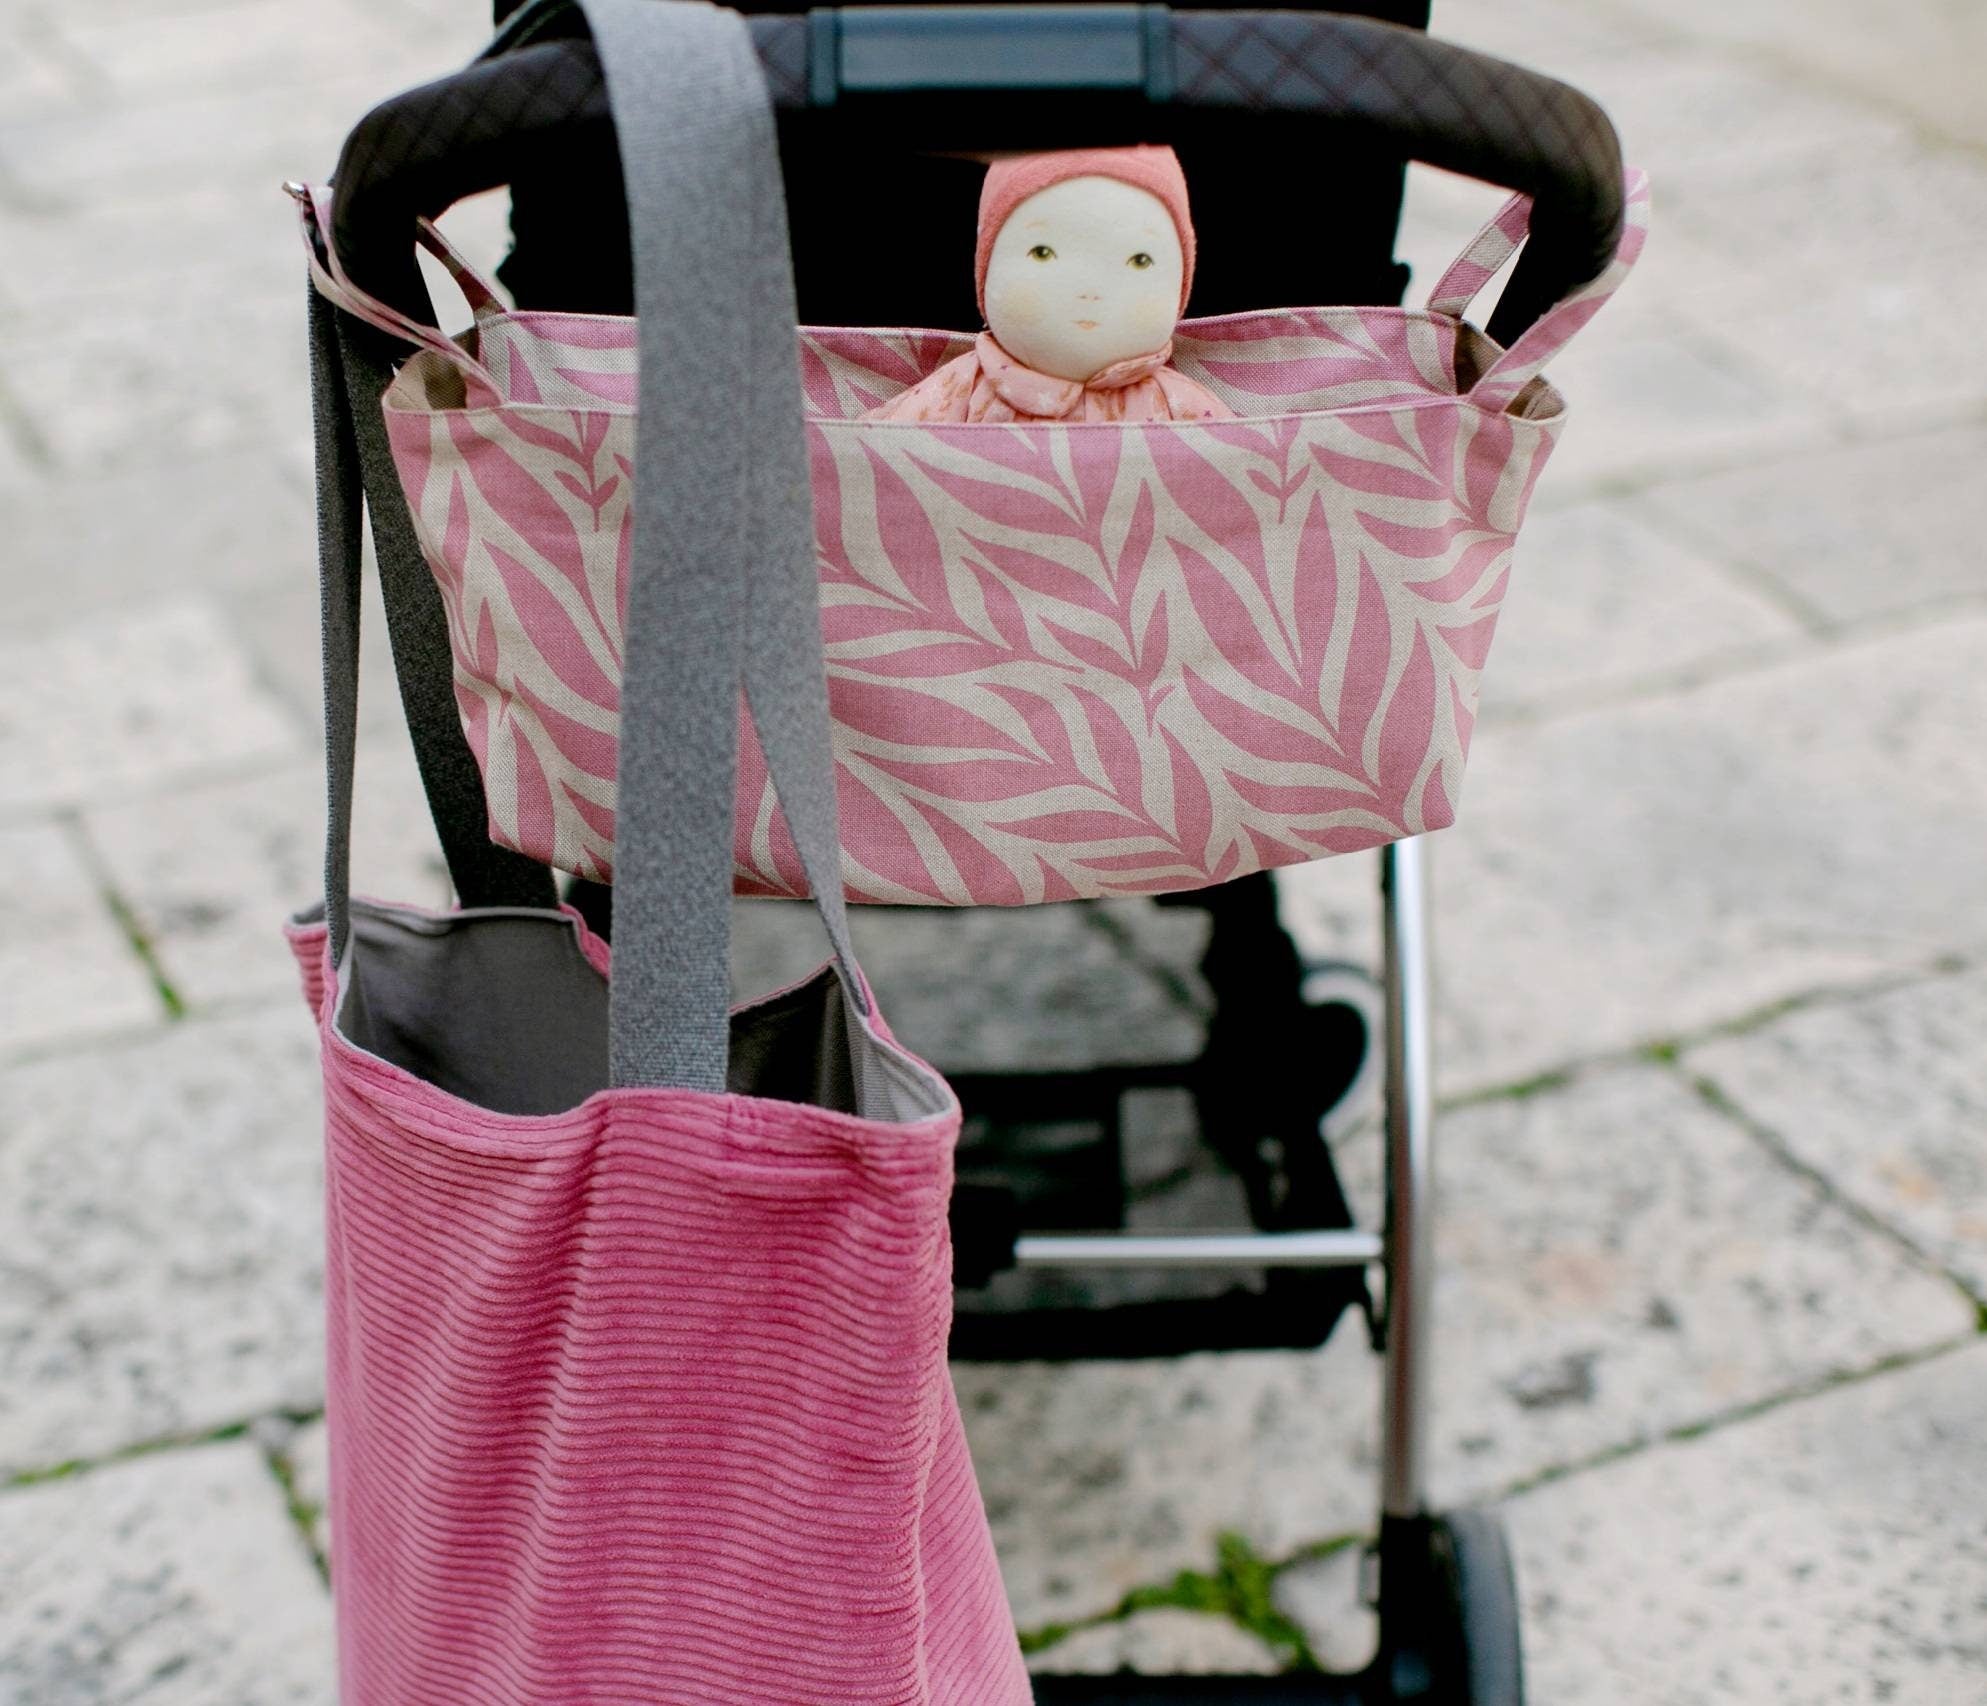 Kinderwagentasche als Buggy-Organizer in Rosé